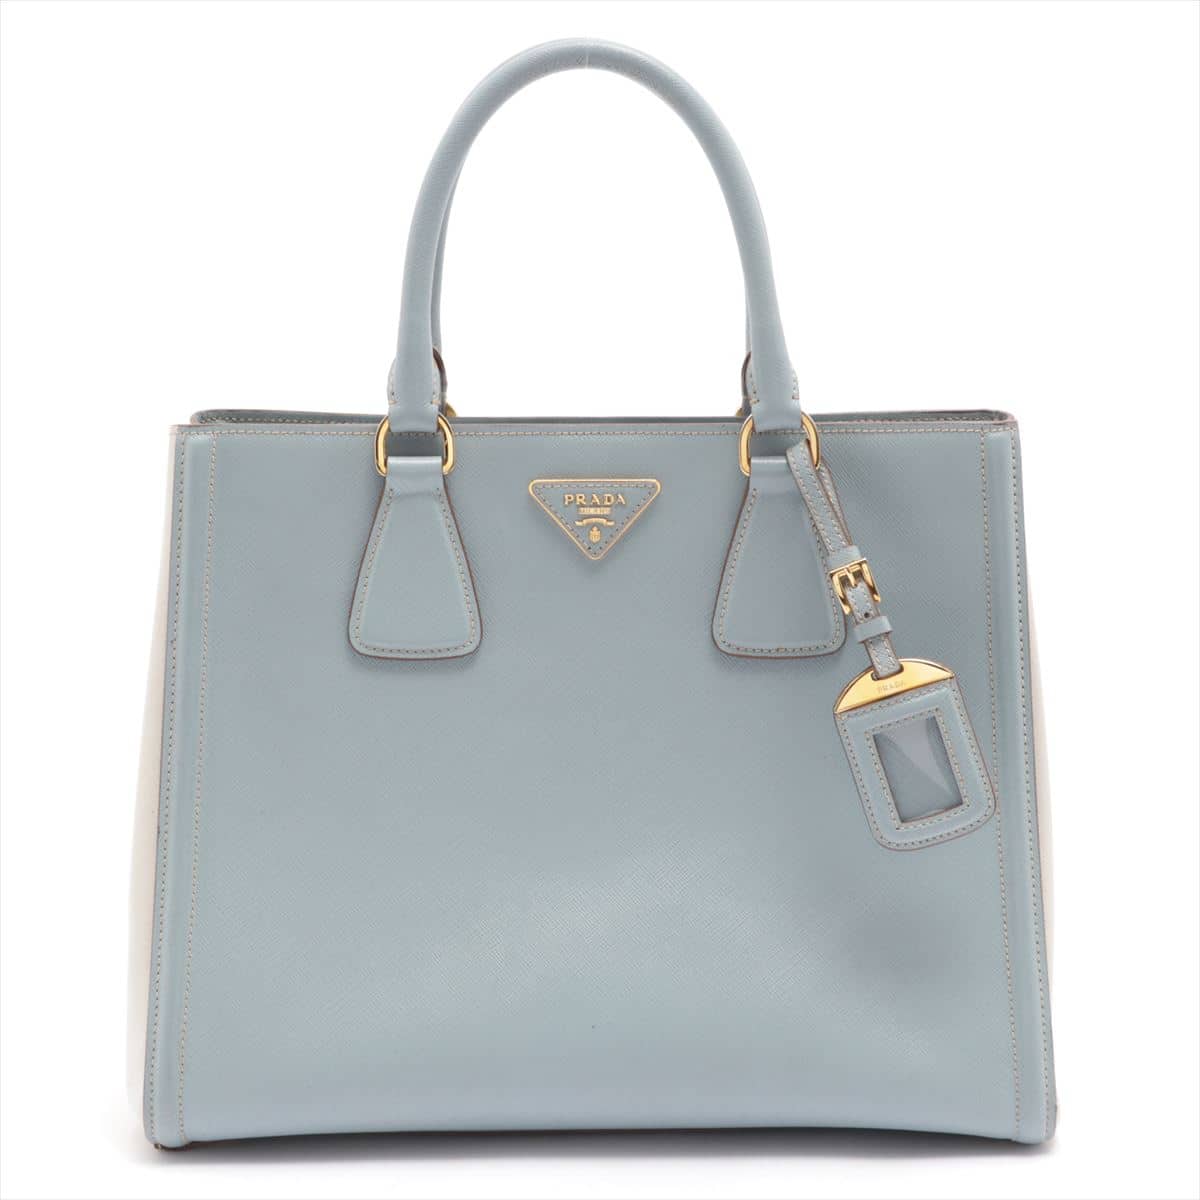 Prada Saffiano 2way handbag Blue x white